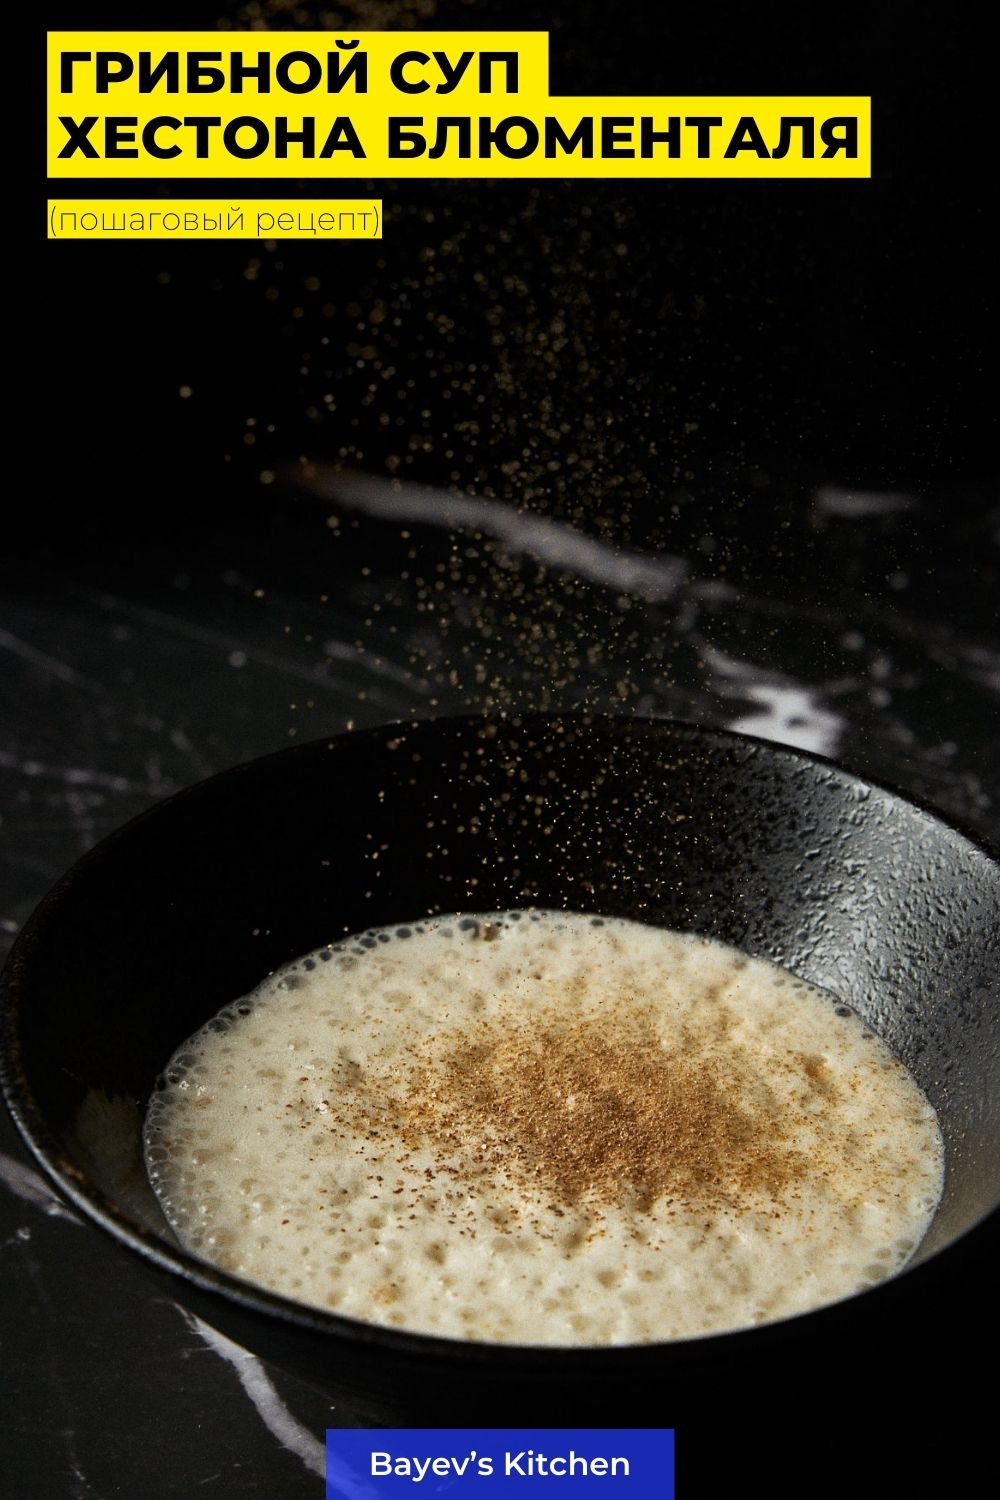 Грибной суп по рецепту Хестона Блюменталя: пошаговый рецепт с фото